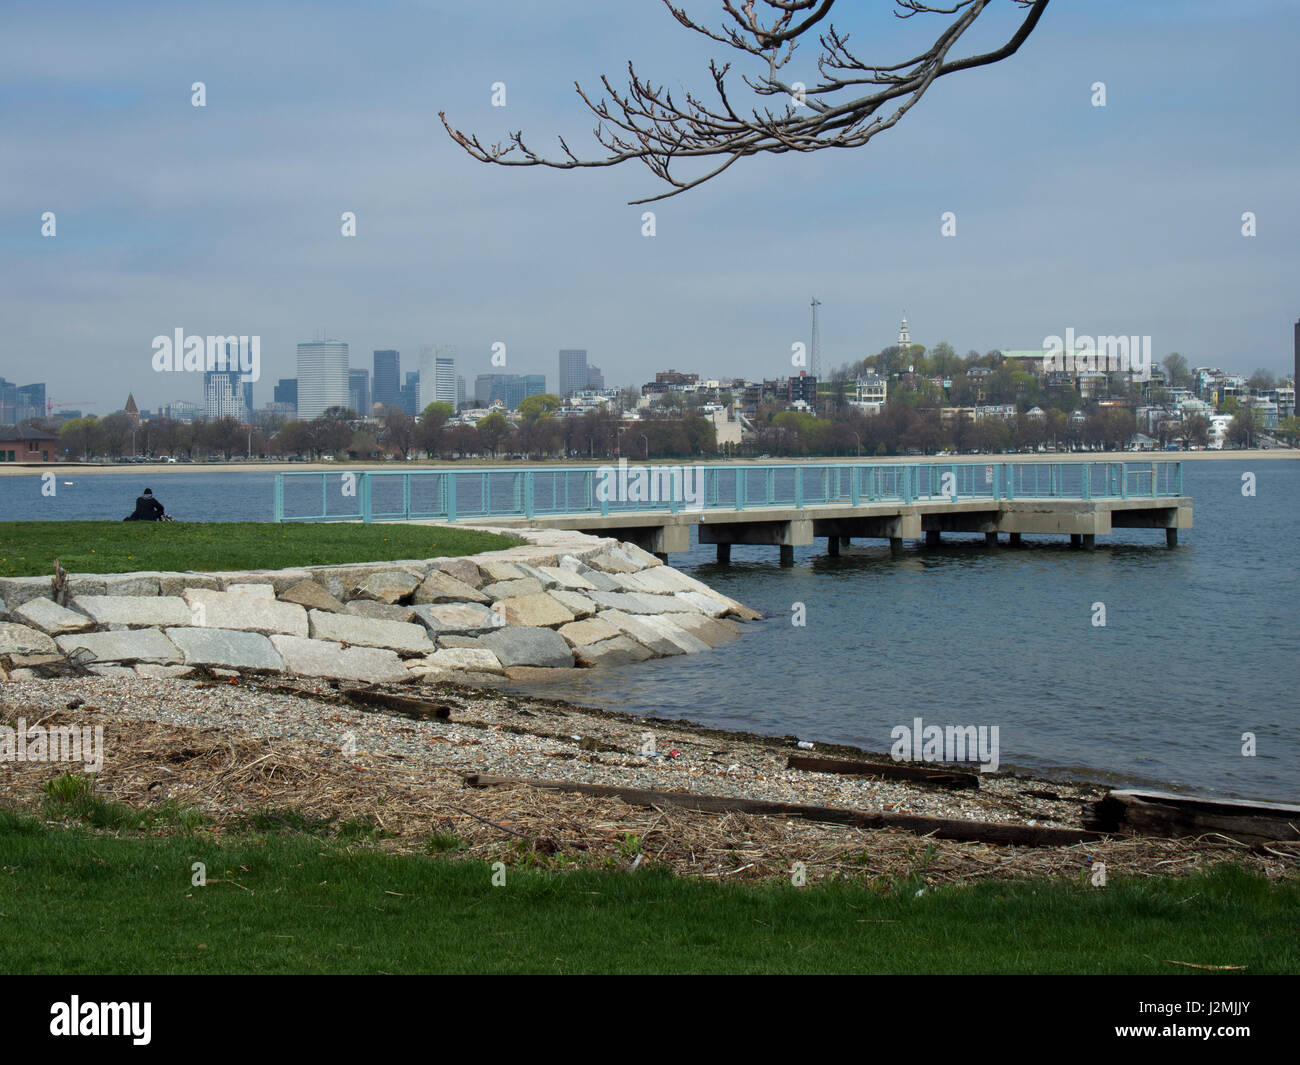 Una vista del horizonte al otro lado del puerto de Boston en Massachusetts. Foto de stock